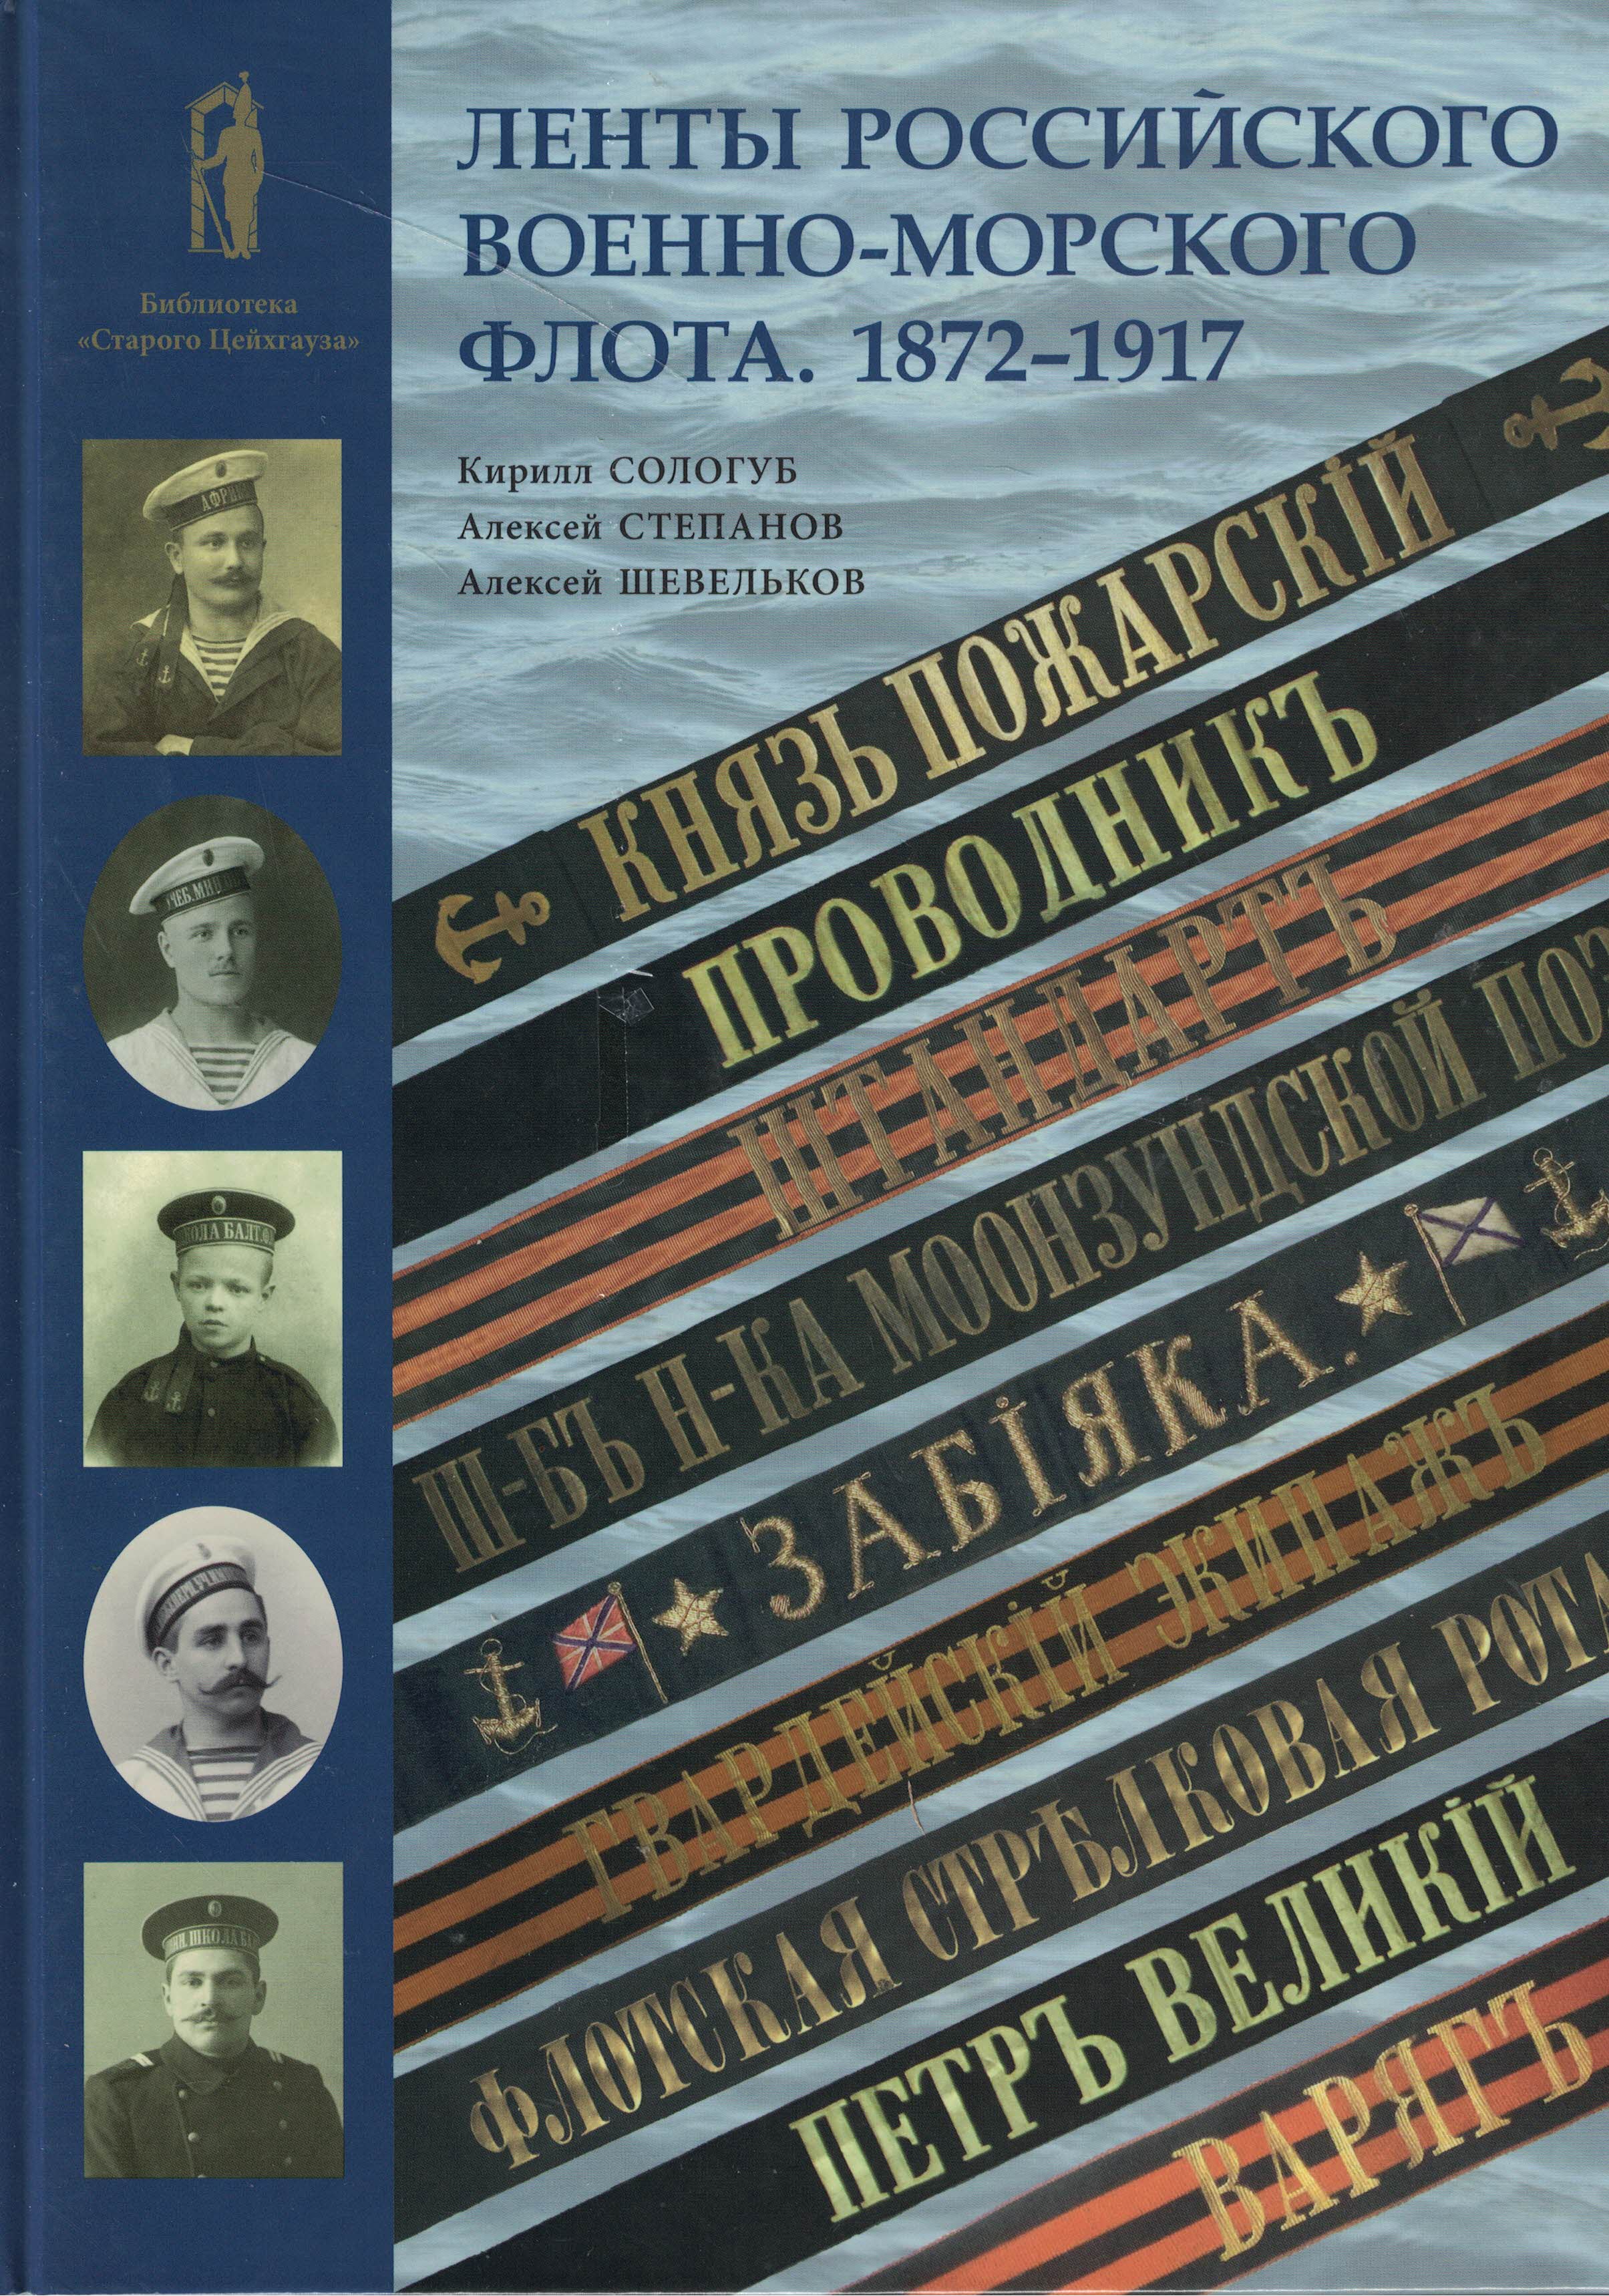 5040260  Сологуб К.Н.  Ленты российского военно-морского флота 1872-1917